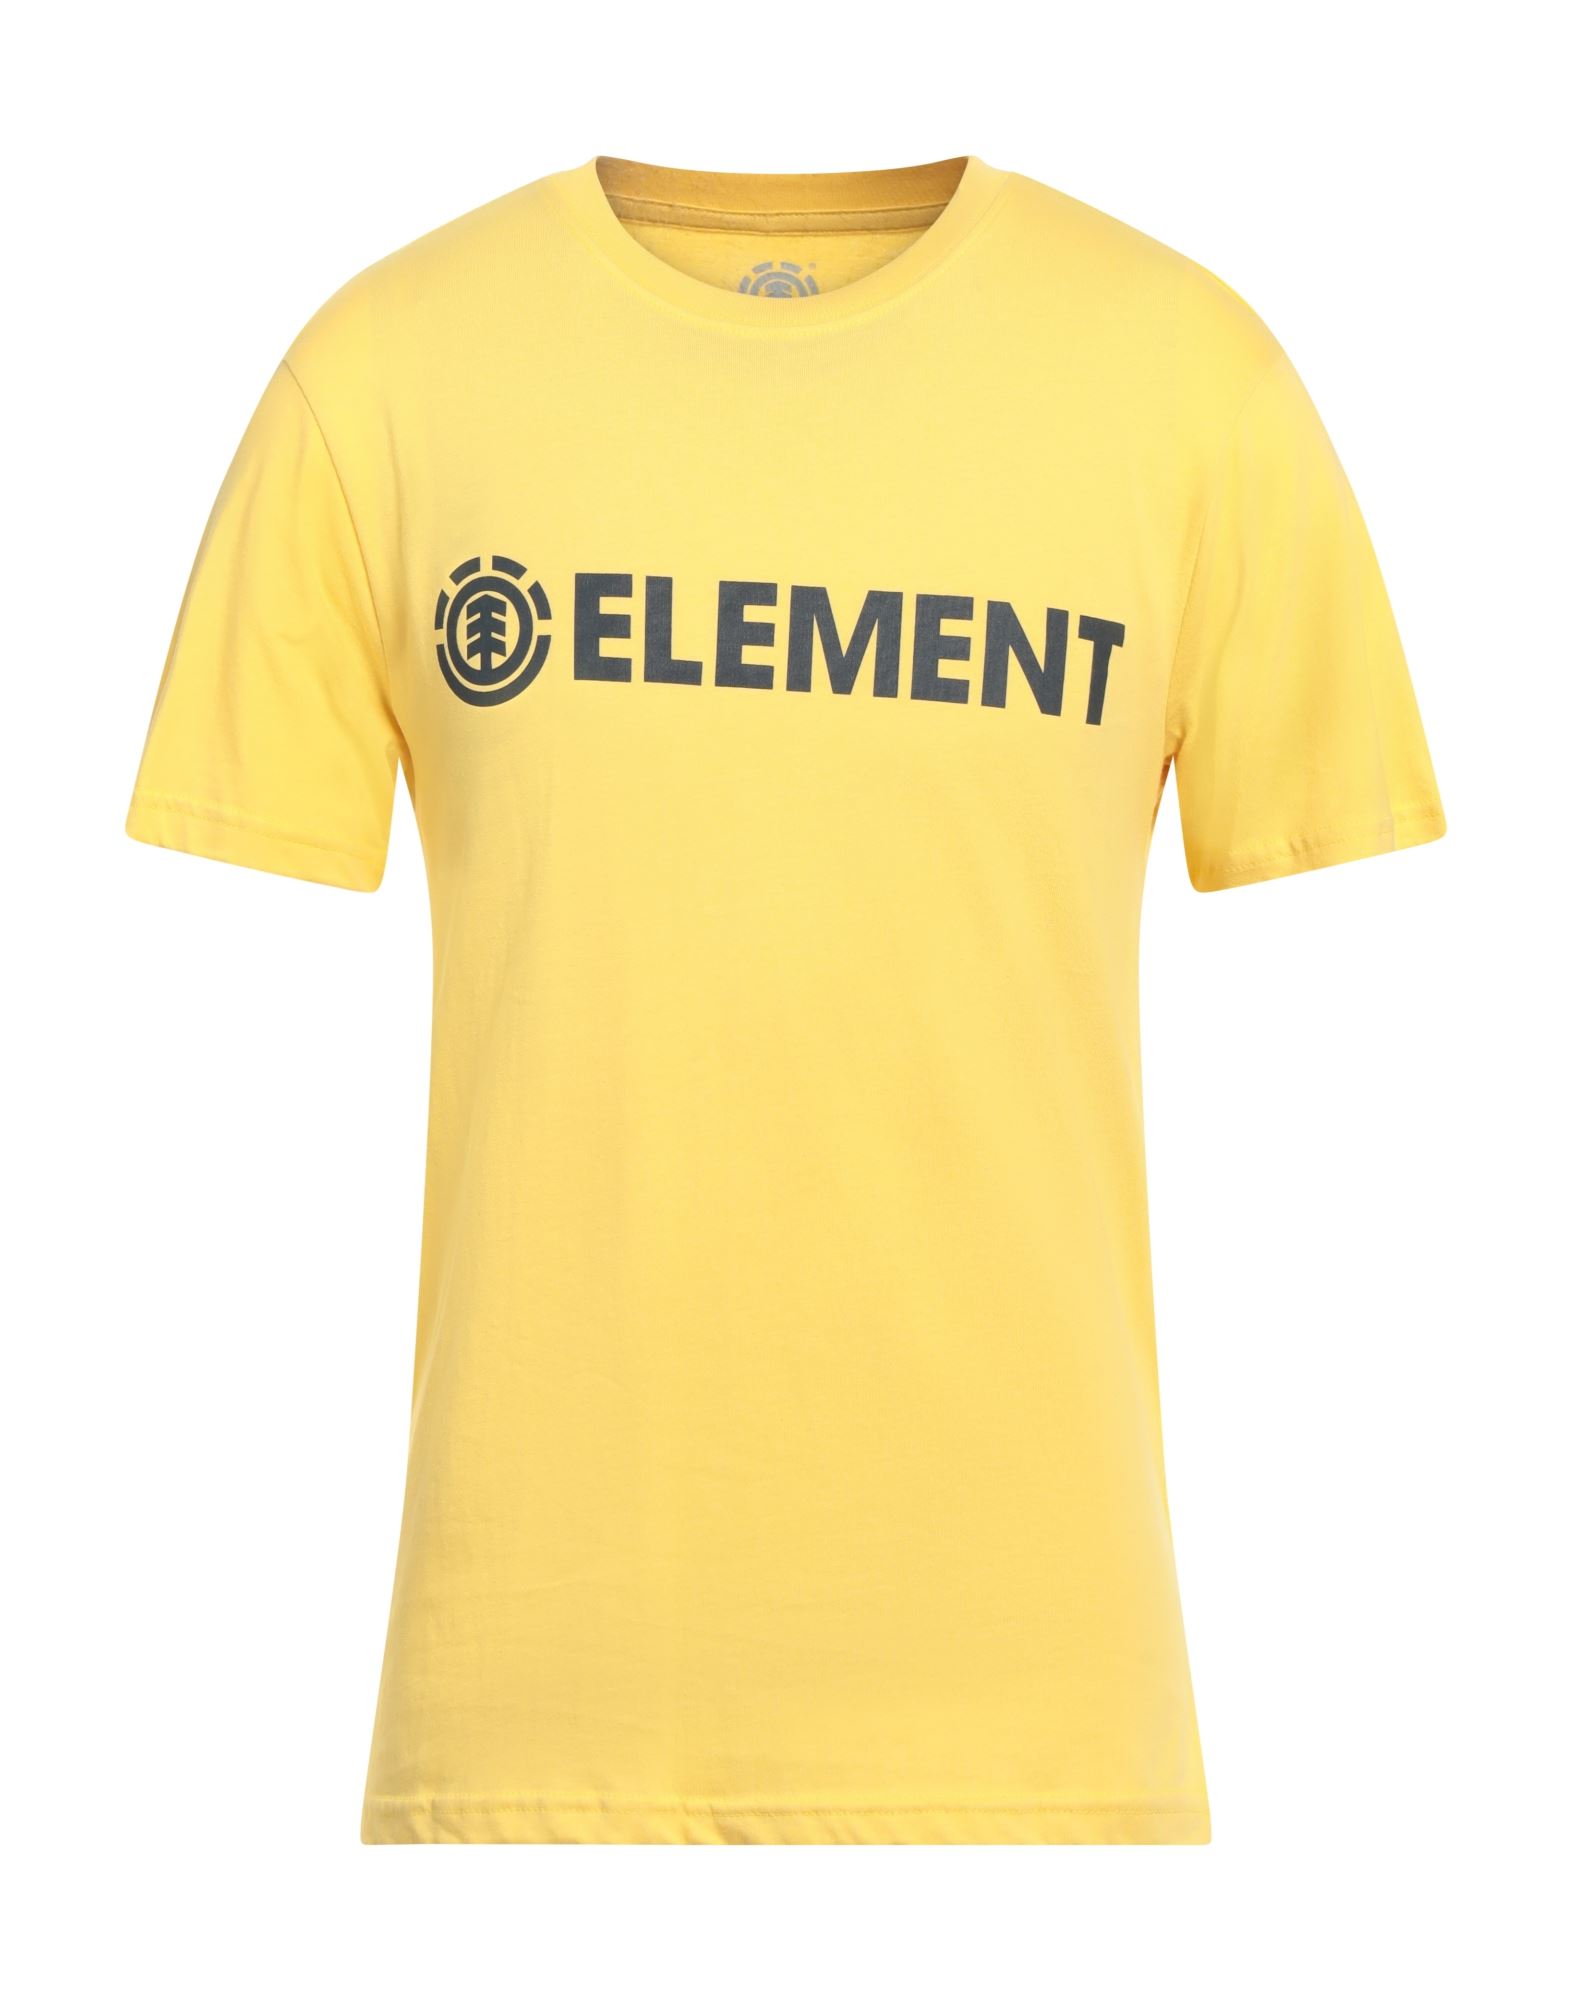 ELEMENT T-shirts Herren Gelb von ELEMENT